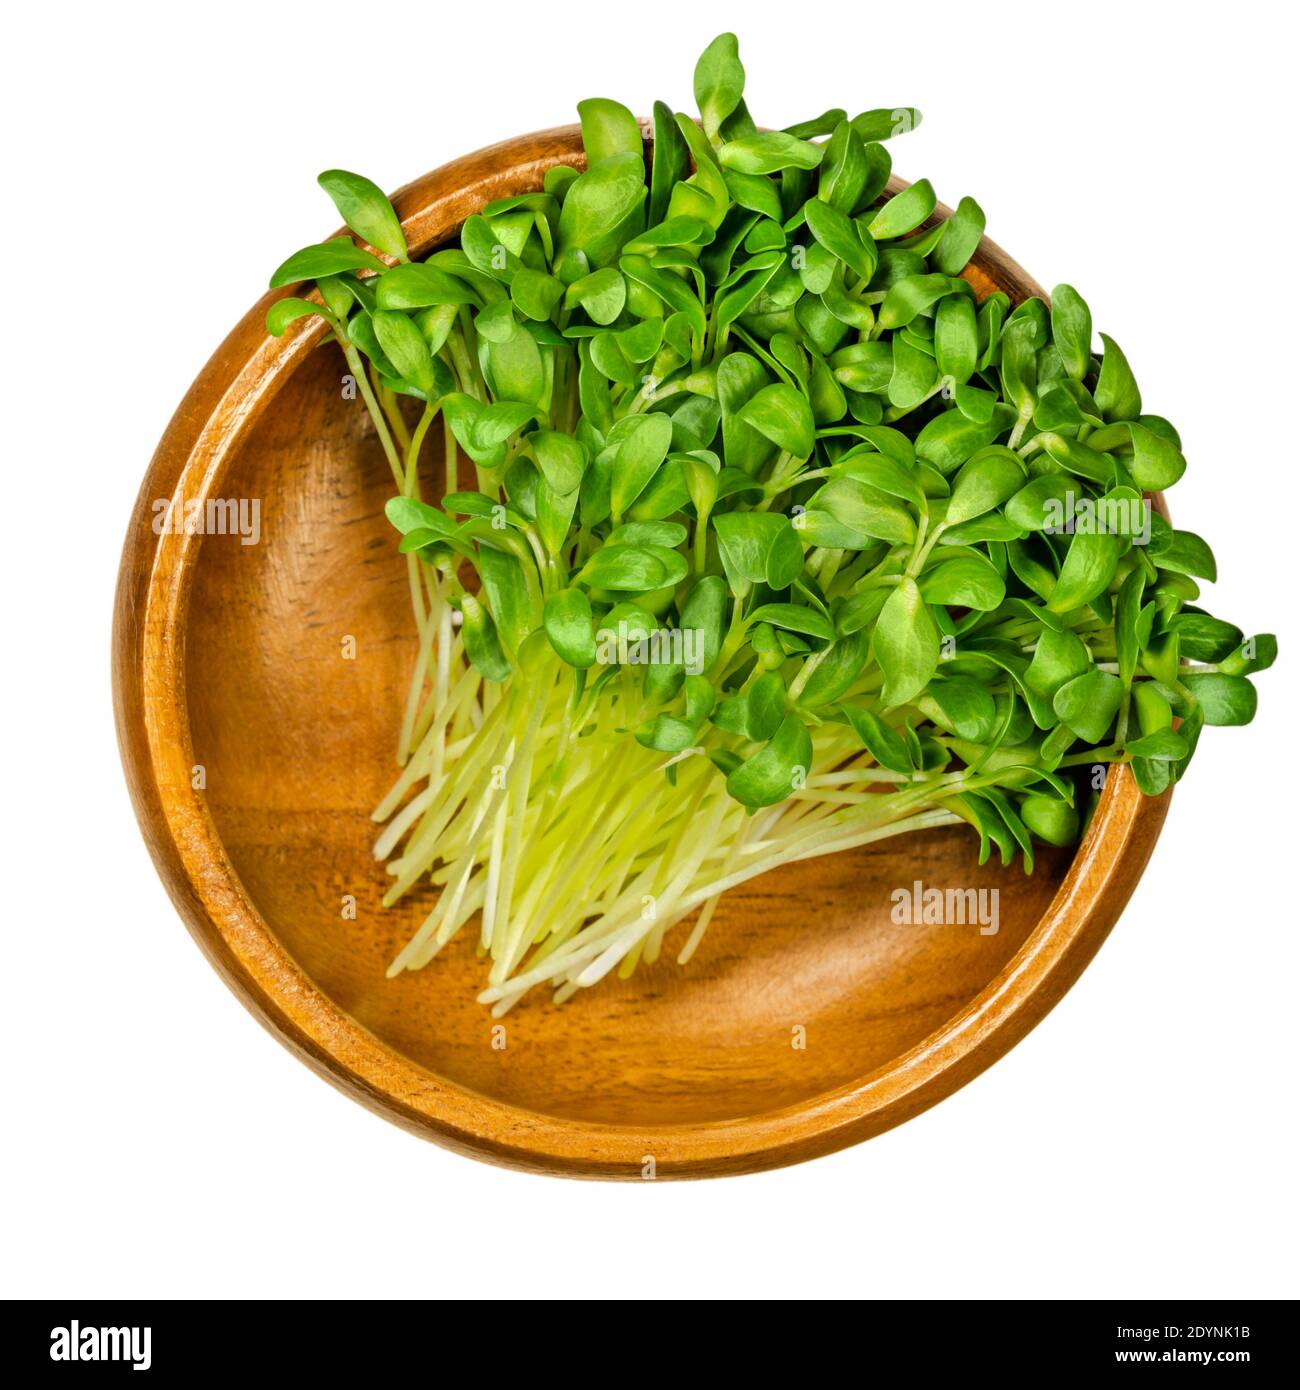 Bockshornklee Mikrogrün in einer Holzschale. Bereit, grüne Sprossen und Triebe von Trigonella foenum-graecum zu essen. Verwendet als Kräuter und Gemüse. Stockfoto